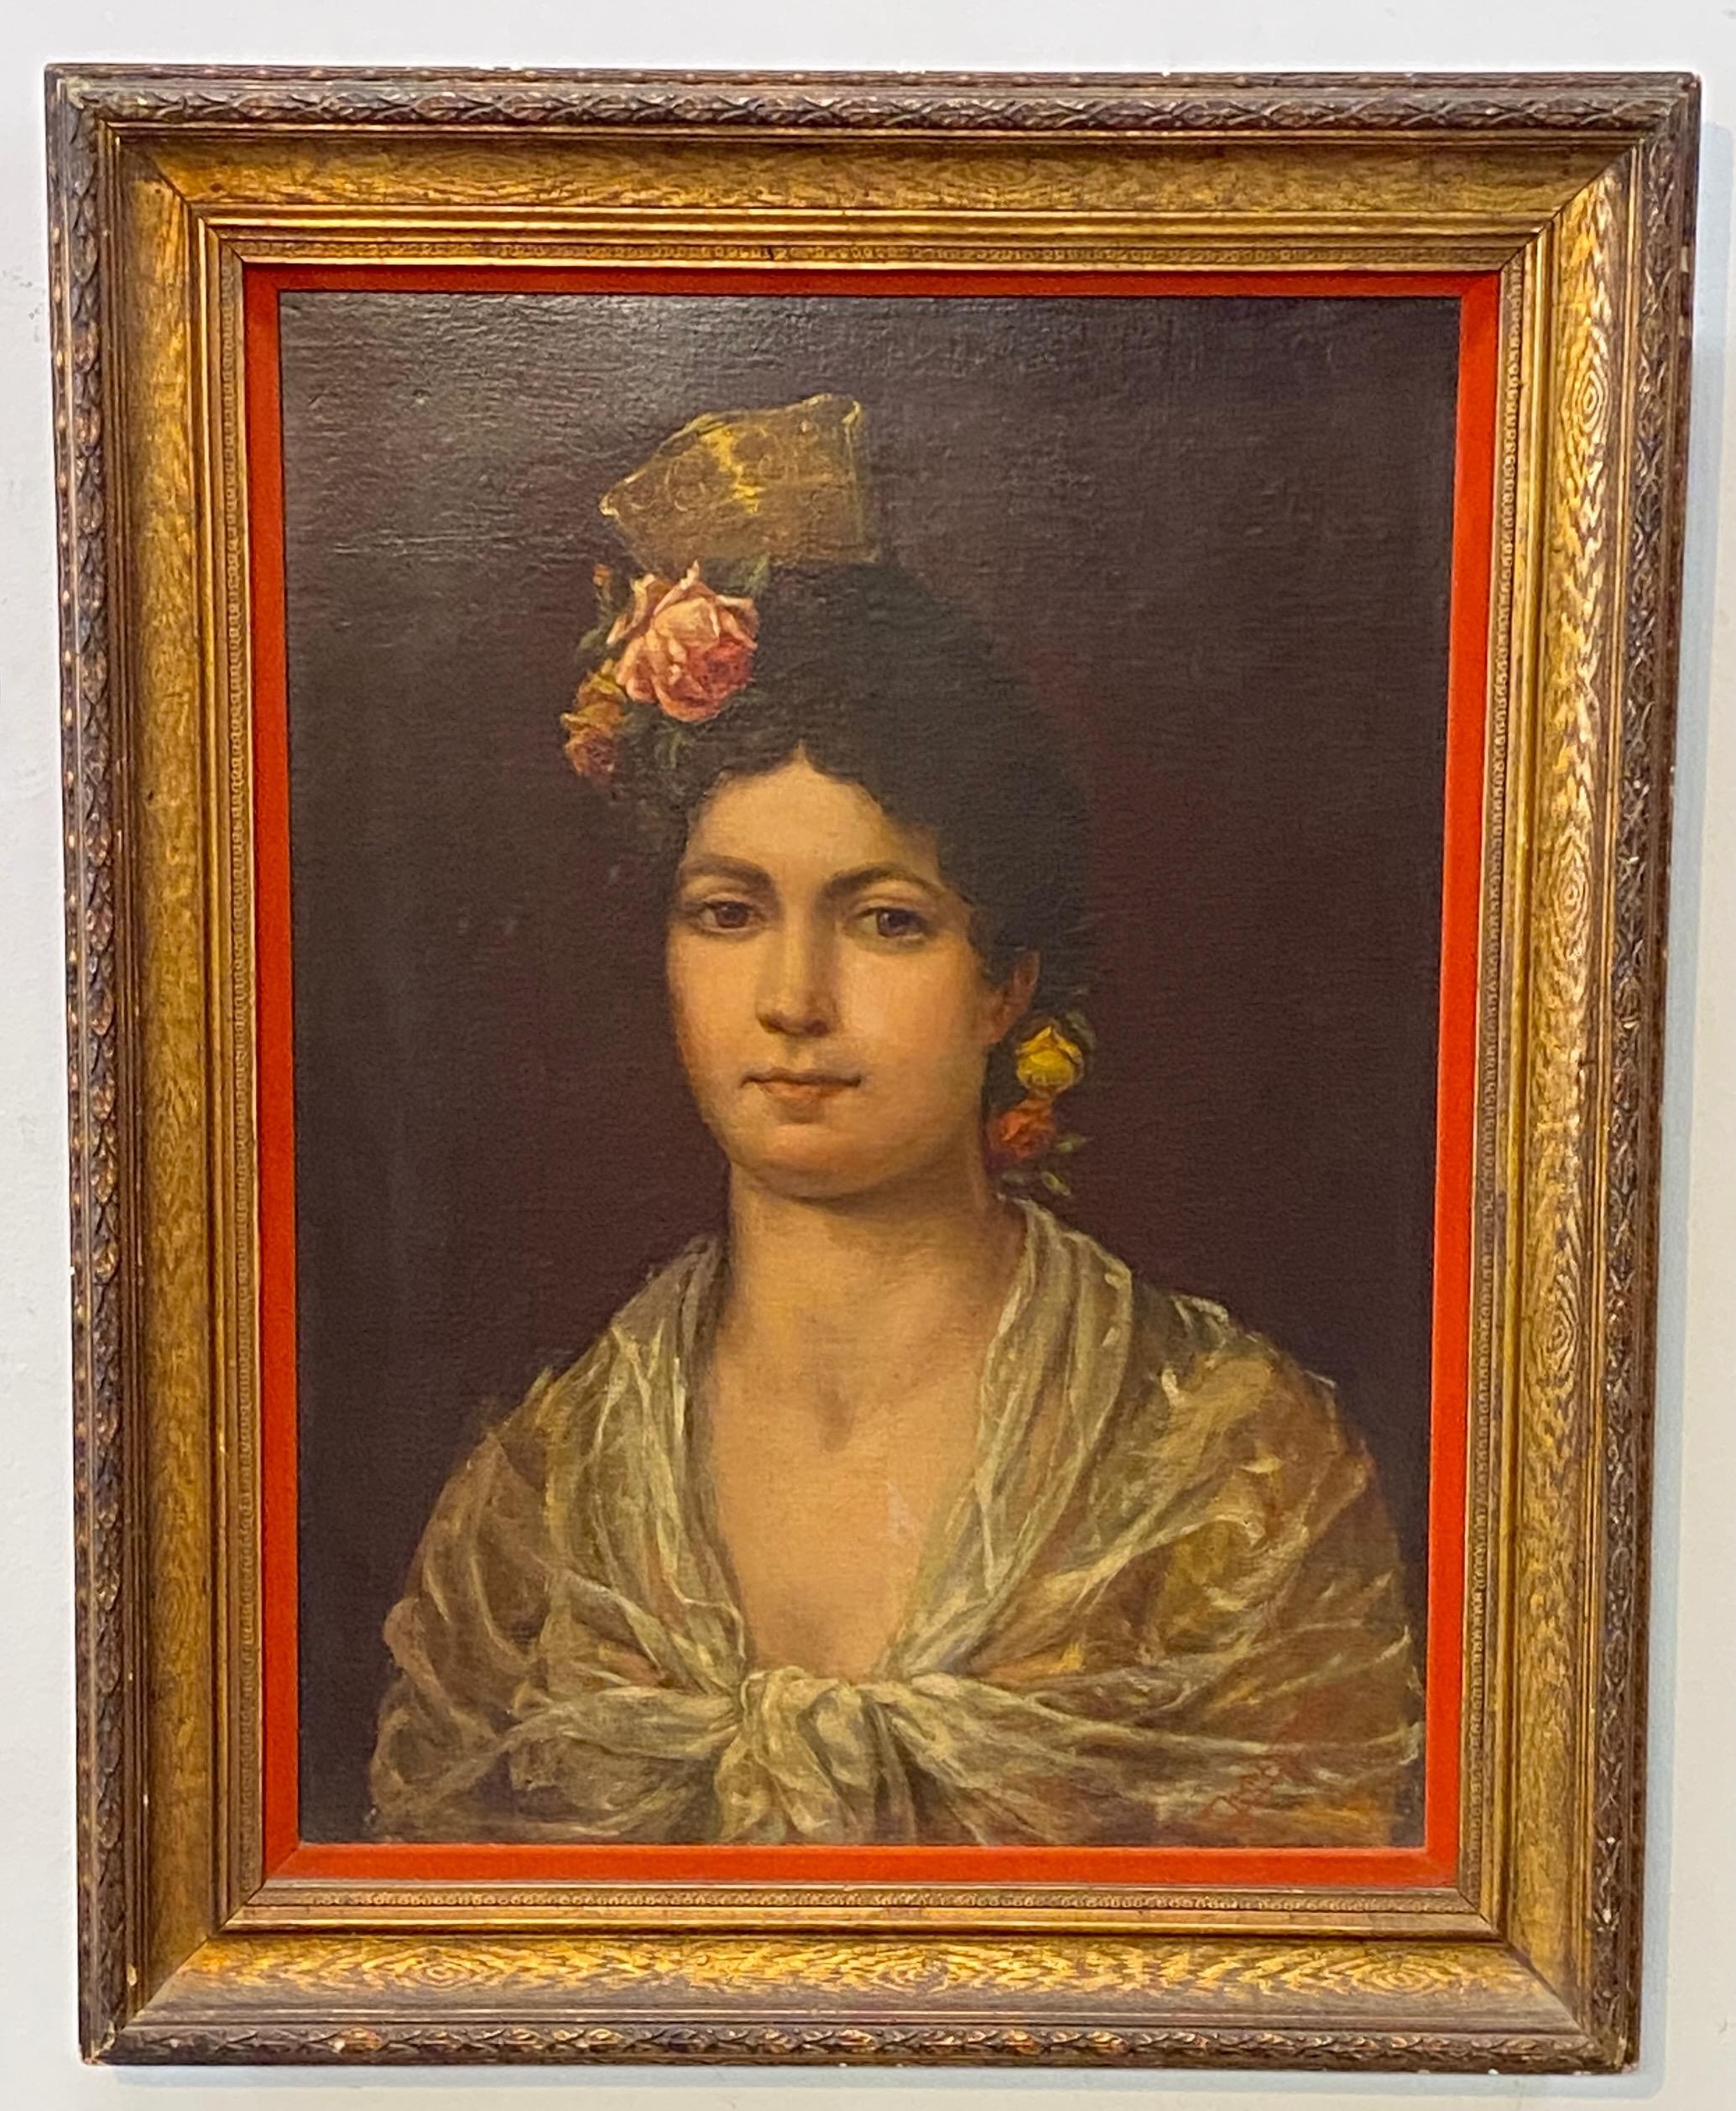 Portrait magnifiquement peint d'une jeune femme espagnole. Signé en bas à droite, mais la signature est indistincte.
Huile sur toile (la toile a été re-lignée il y a quelque temps), le cadre doré est du début du 20ème siècle avec une doublure en